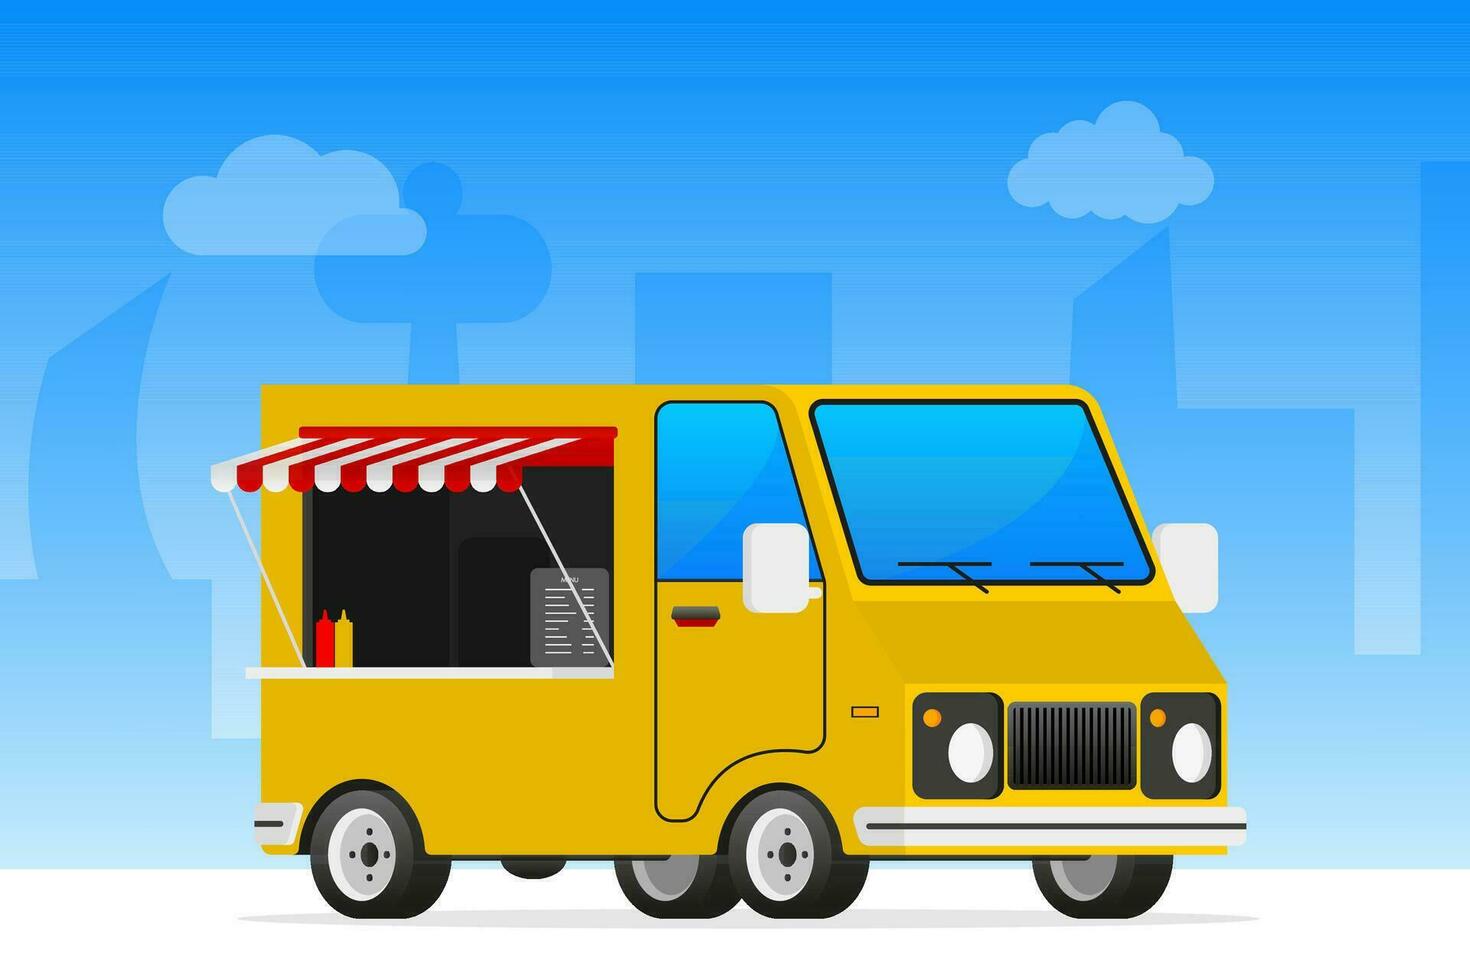 voedsel bus in retro stijl. straat voedsel vrachtwagen. vector illustratie.